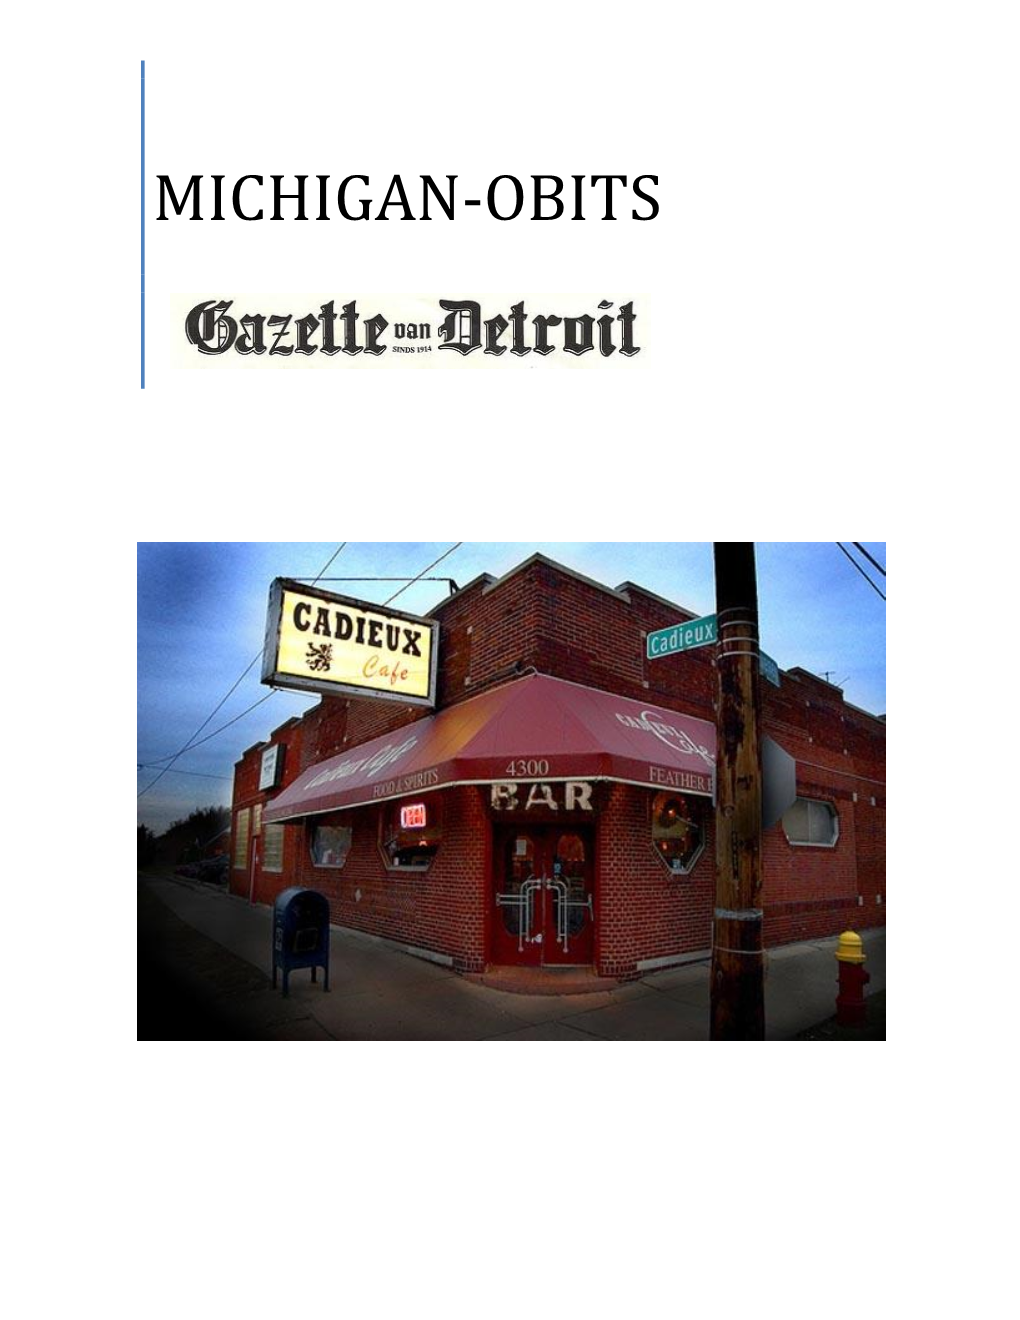 Obituaries from the Gazette Van Detroit